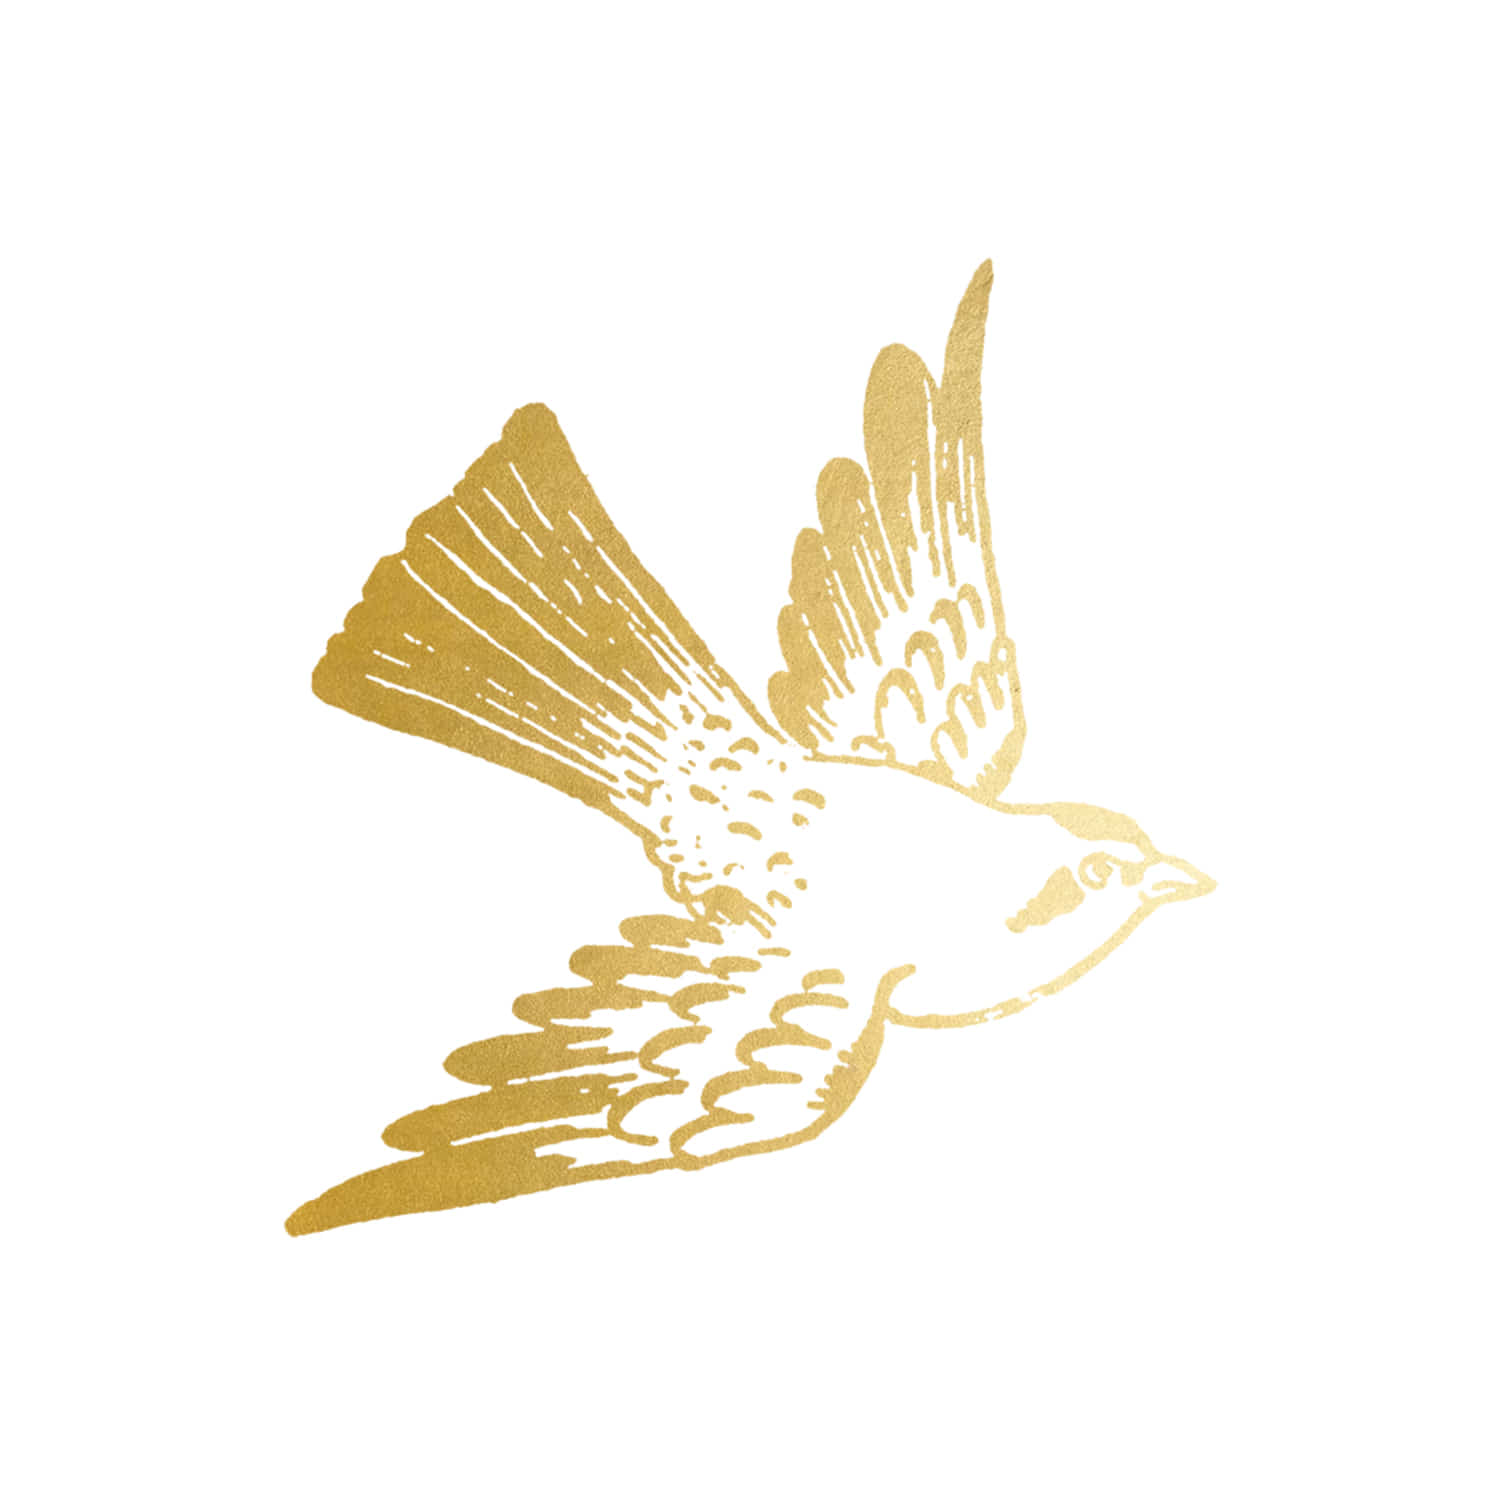 태틀리 Cartolina Bird Gold 타투스티커 페어 2매